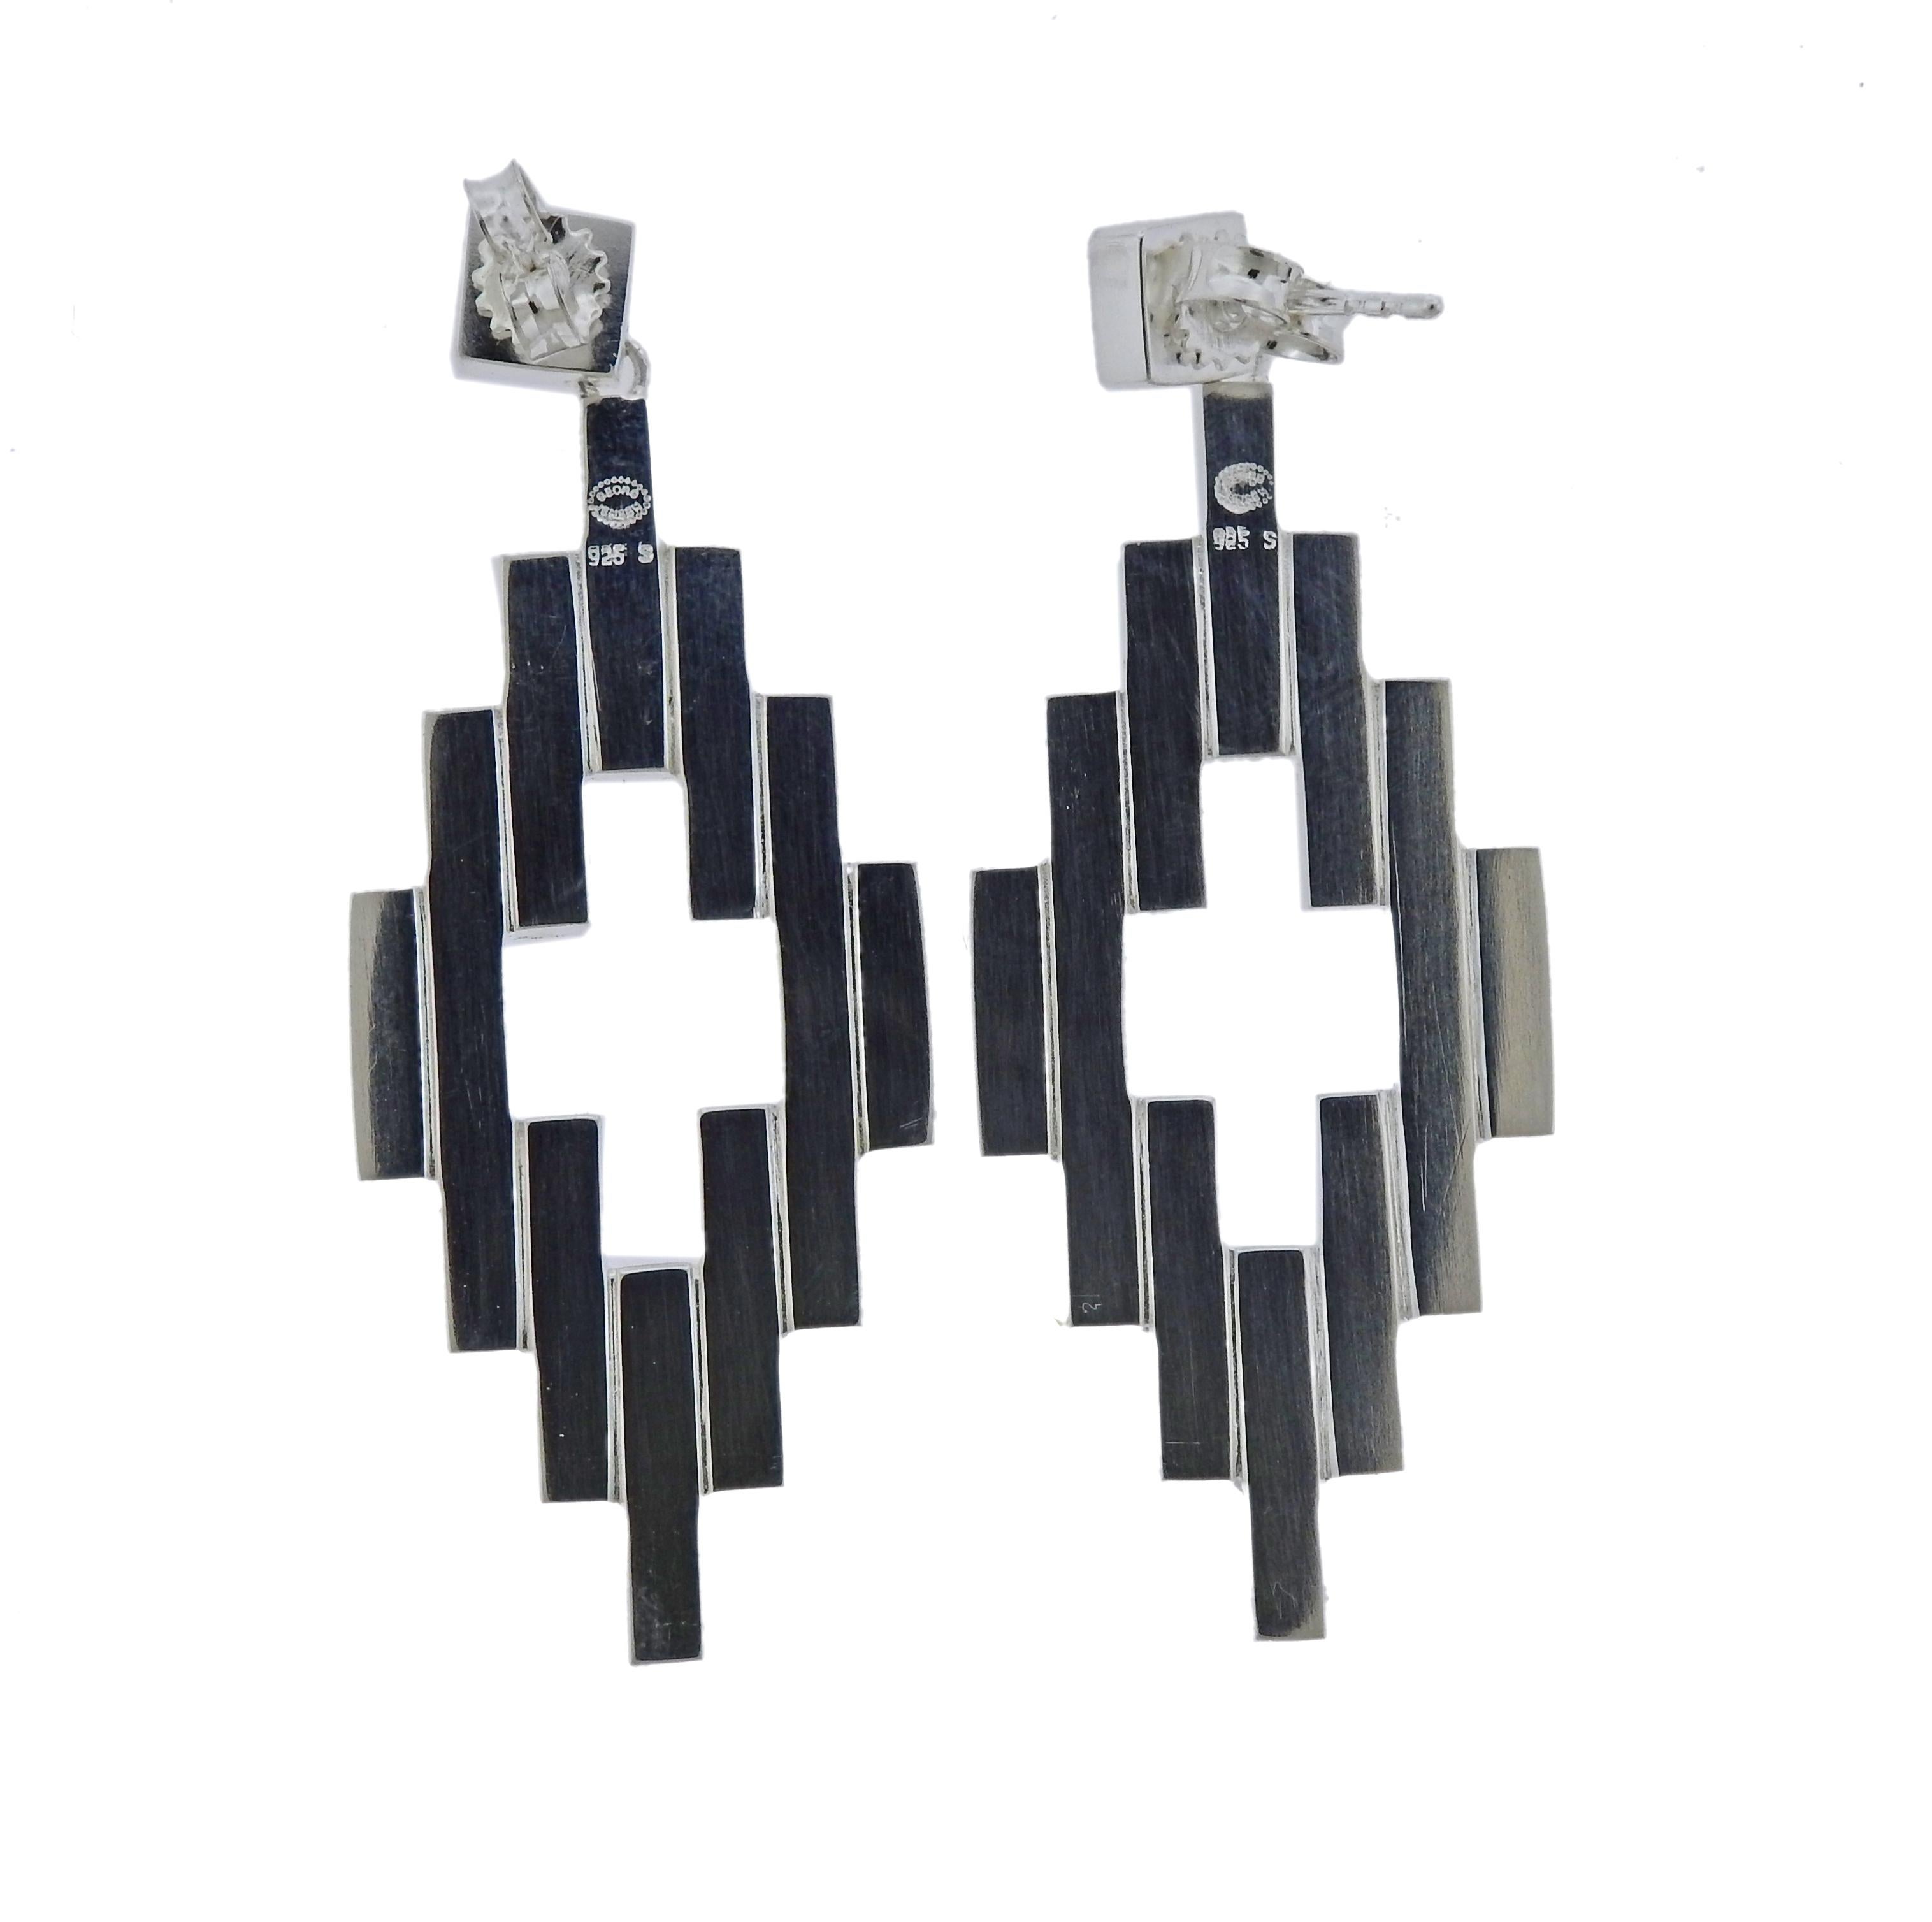 Paar Ohrringe aus Sterlingsilber:: hergestellt von Georg Jensen. Nagelneu mit Verpackung. Die Ohrringe sind 54 mm x 21 mm groß und wiegen 14::1 Gramm. Gekennzeichnet mit 925 S Jensen.